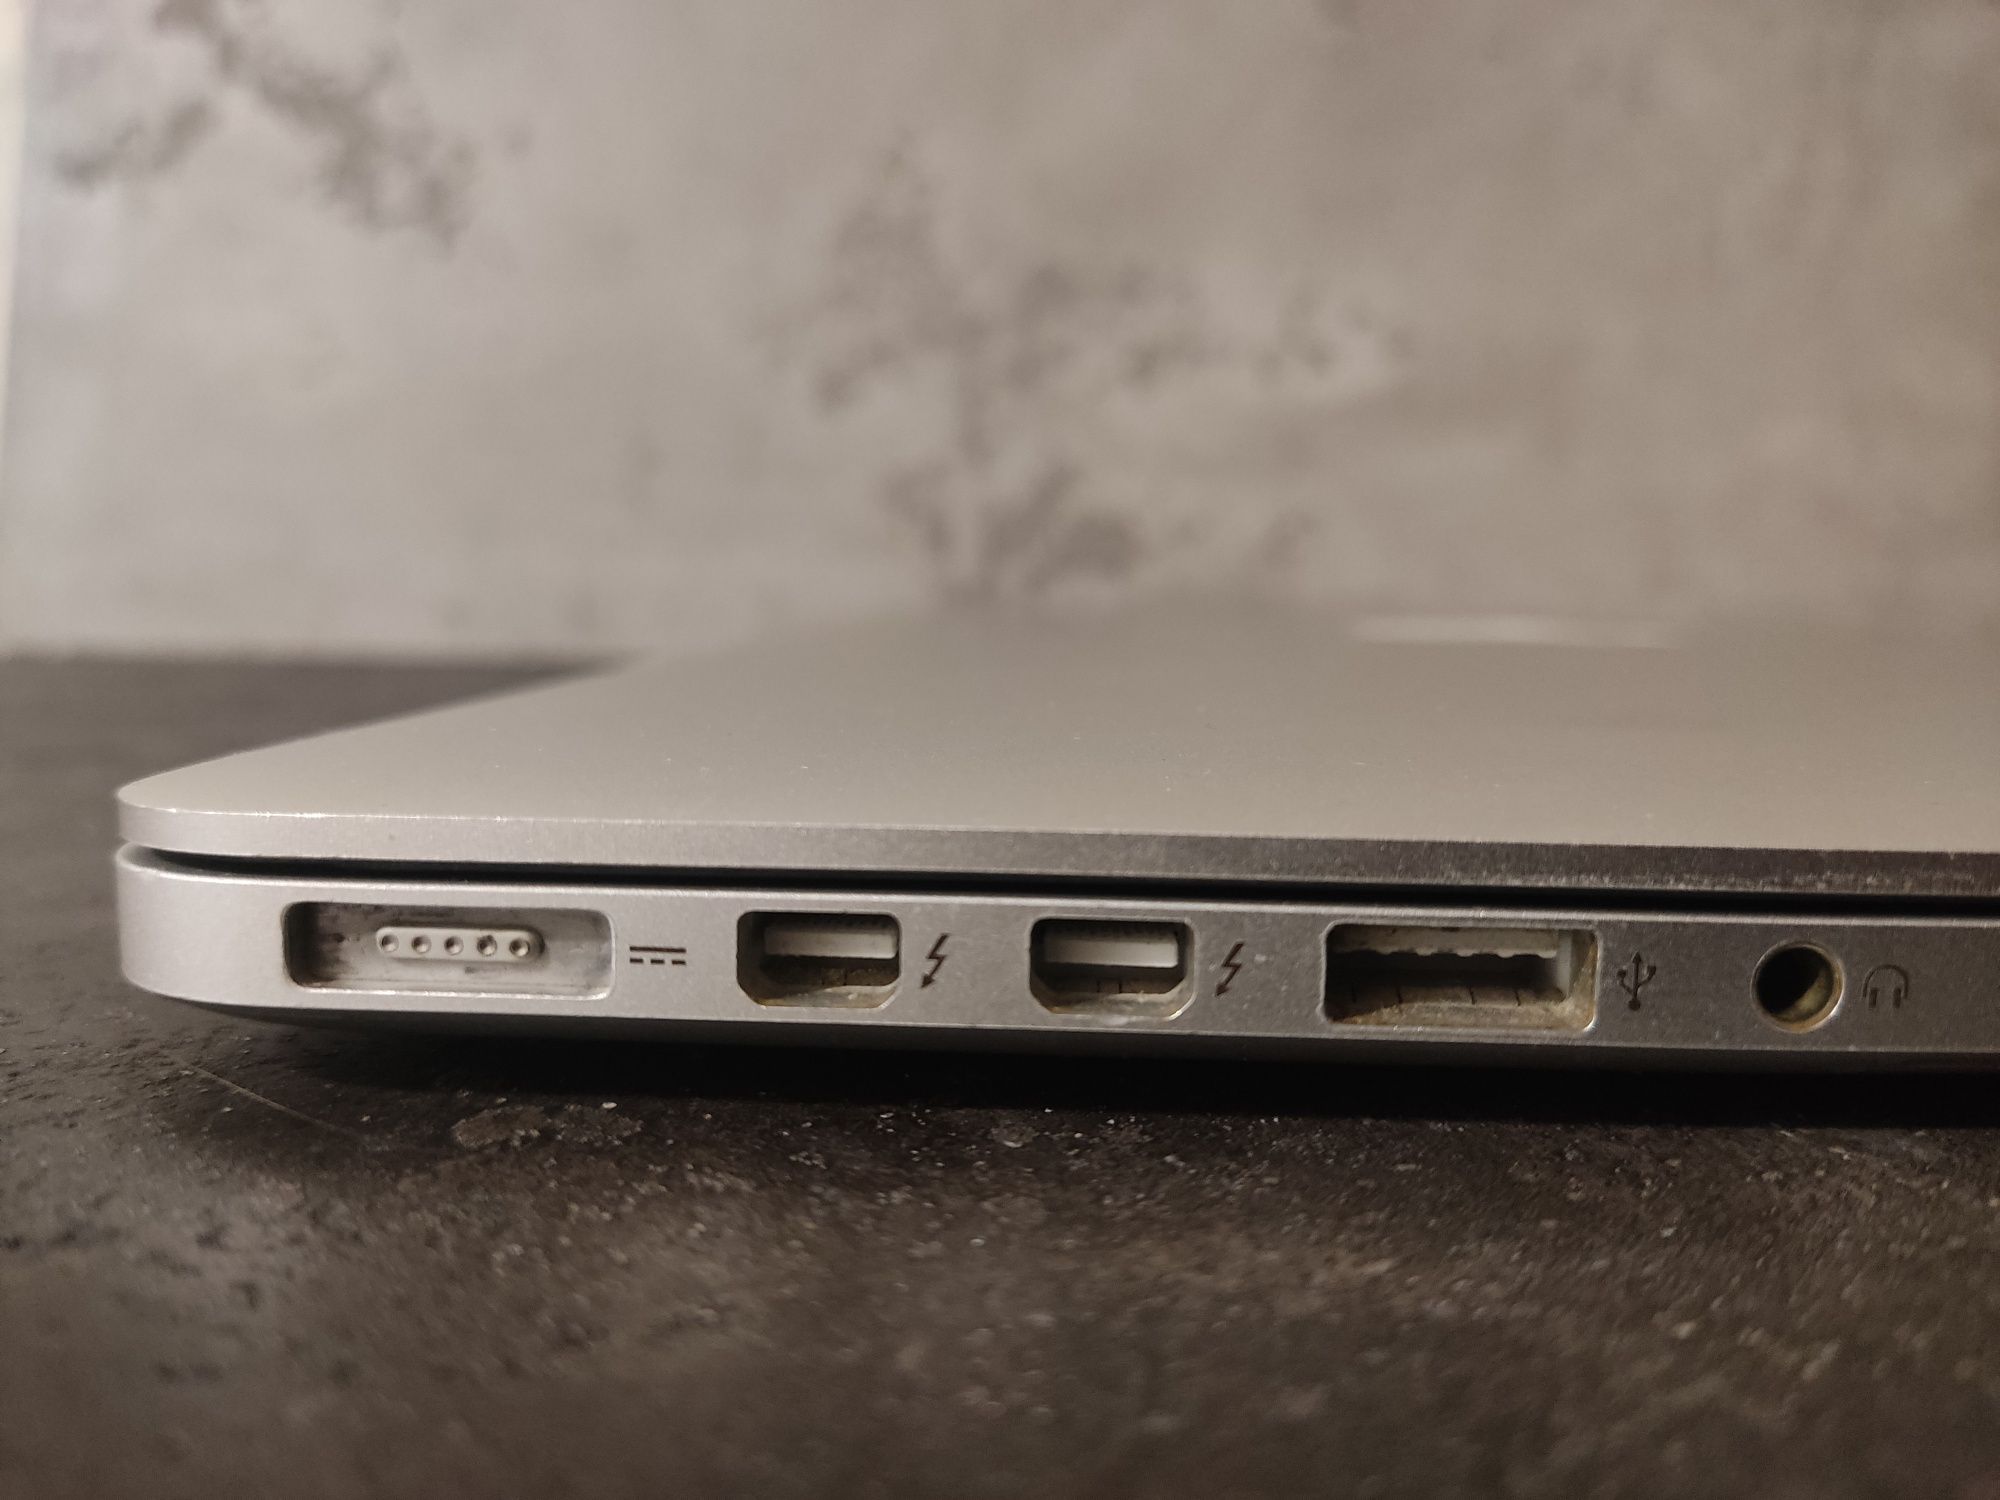 Apple MacBook Pro 13 A1502